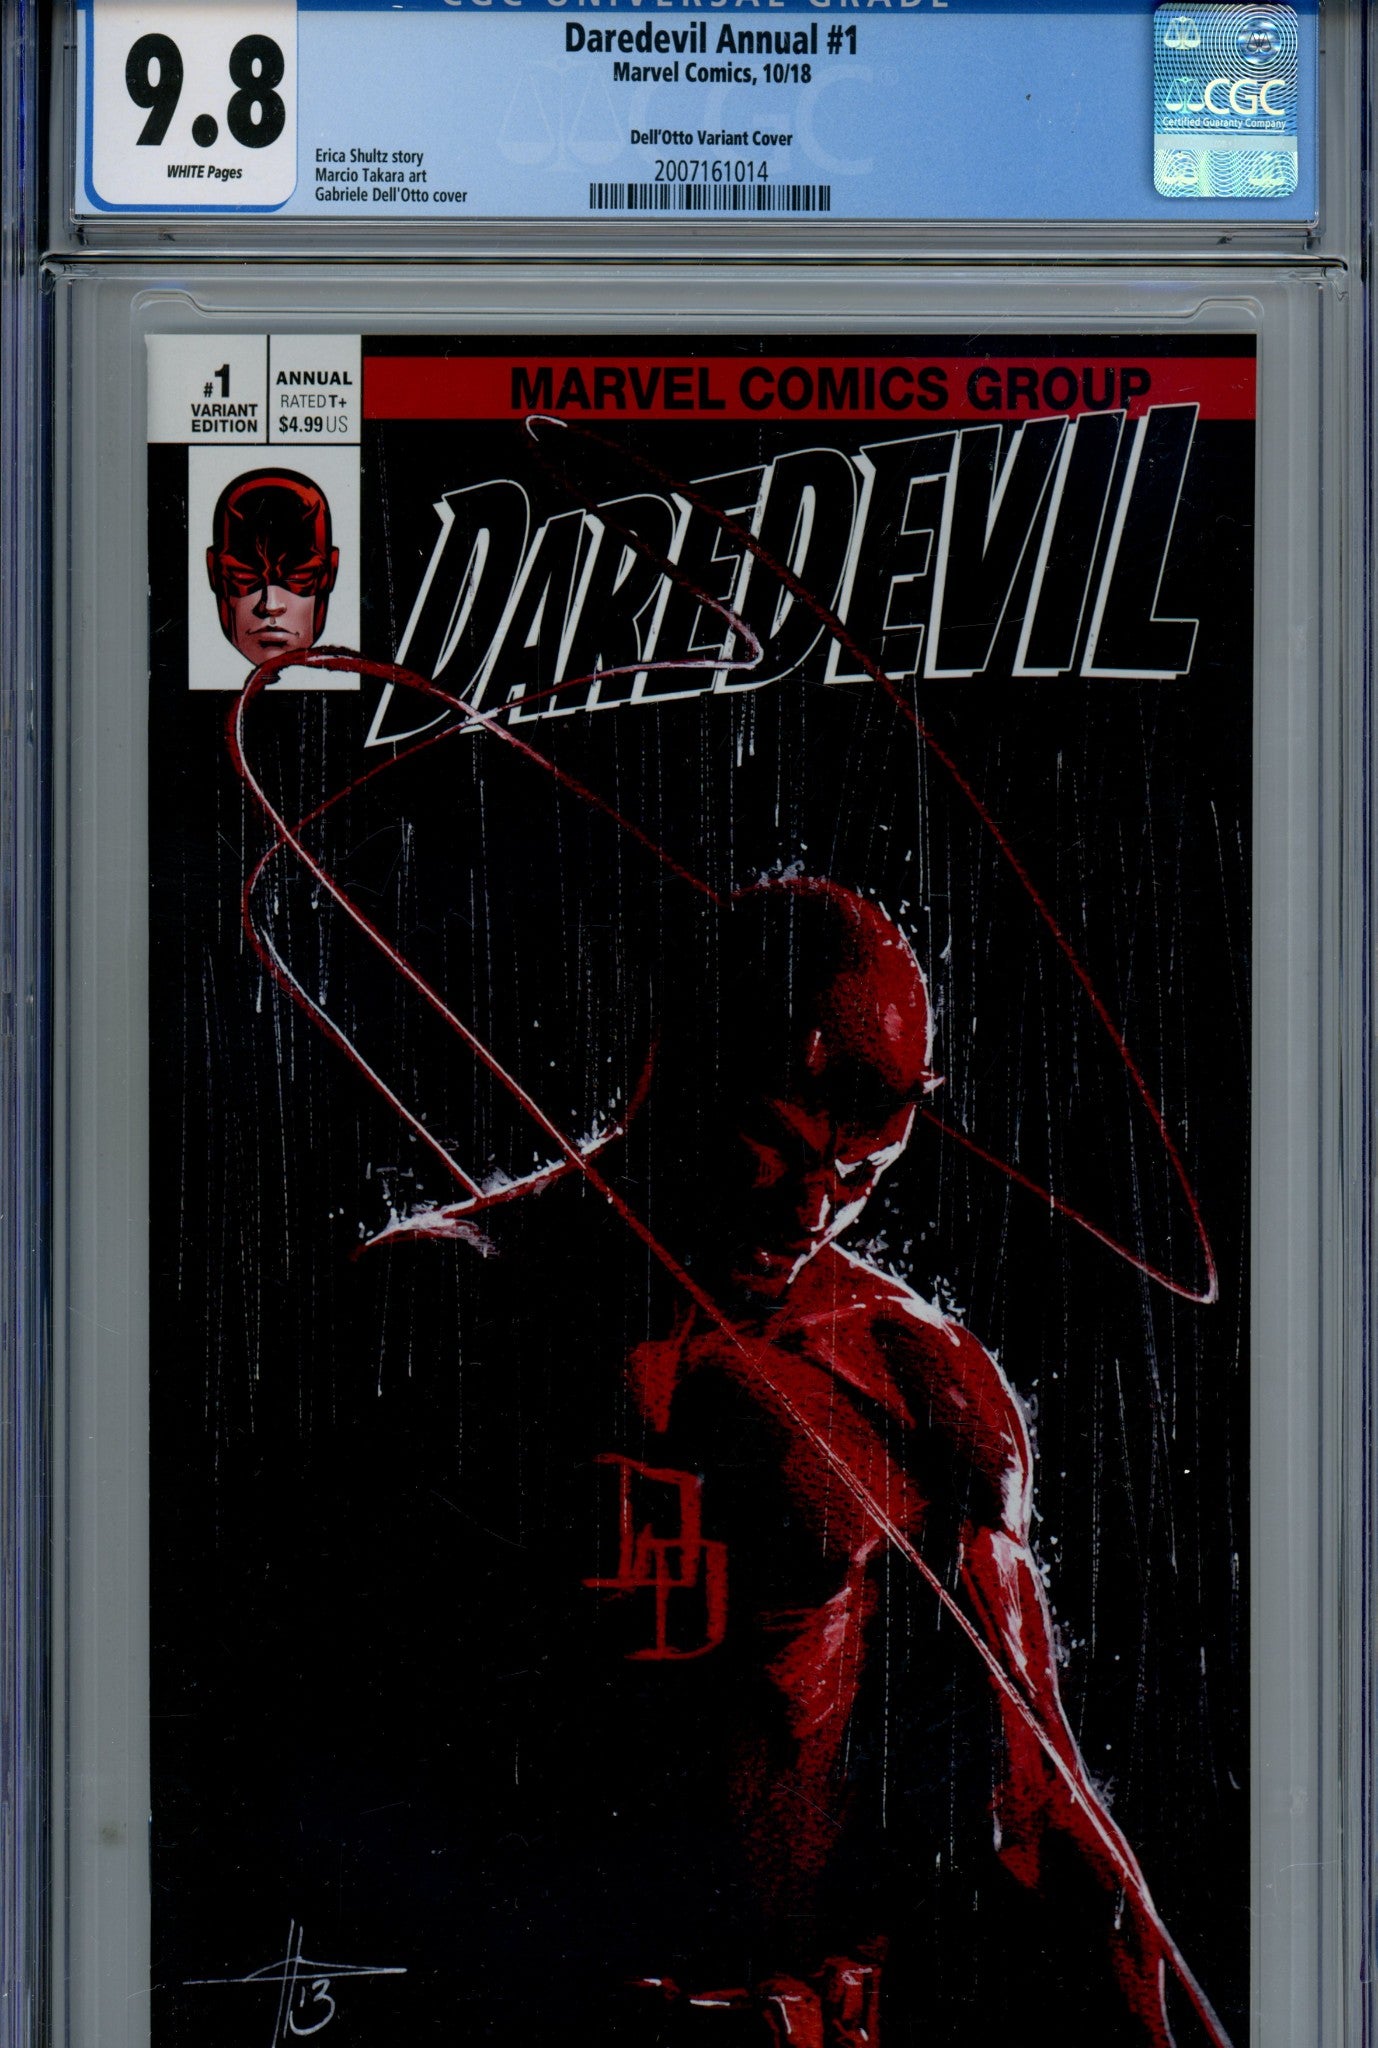 Daredevil Annual Vol 5 1 Dell'Otto Variant CGC 9.8 (2018)